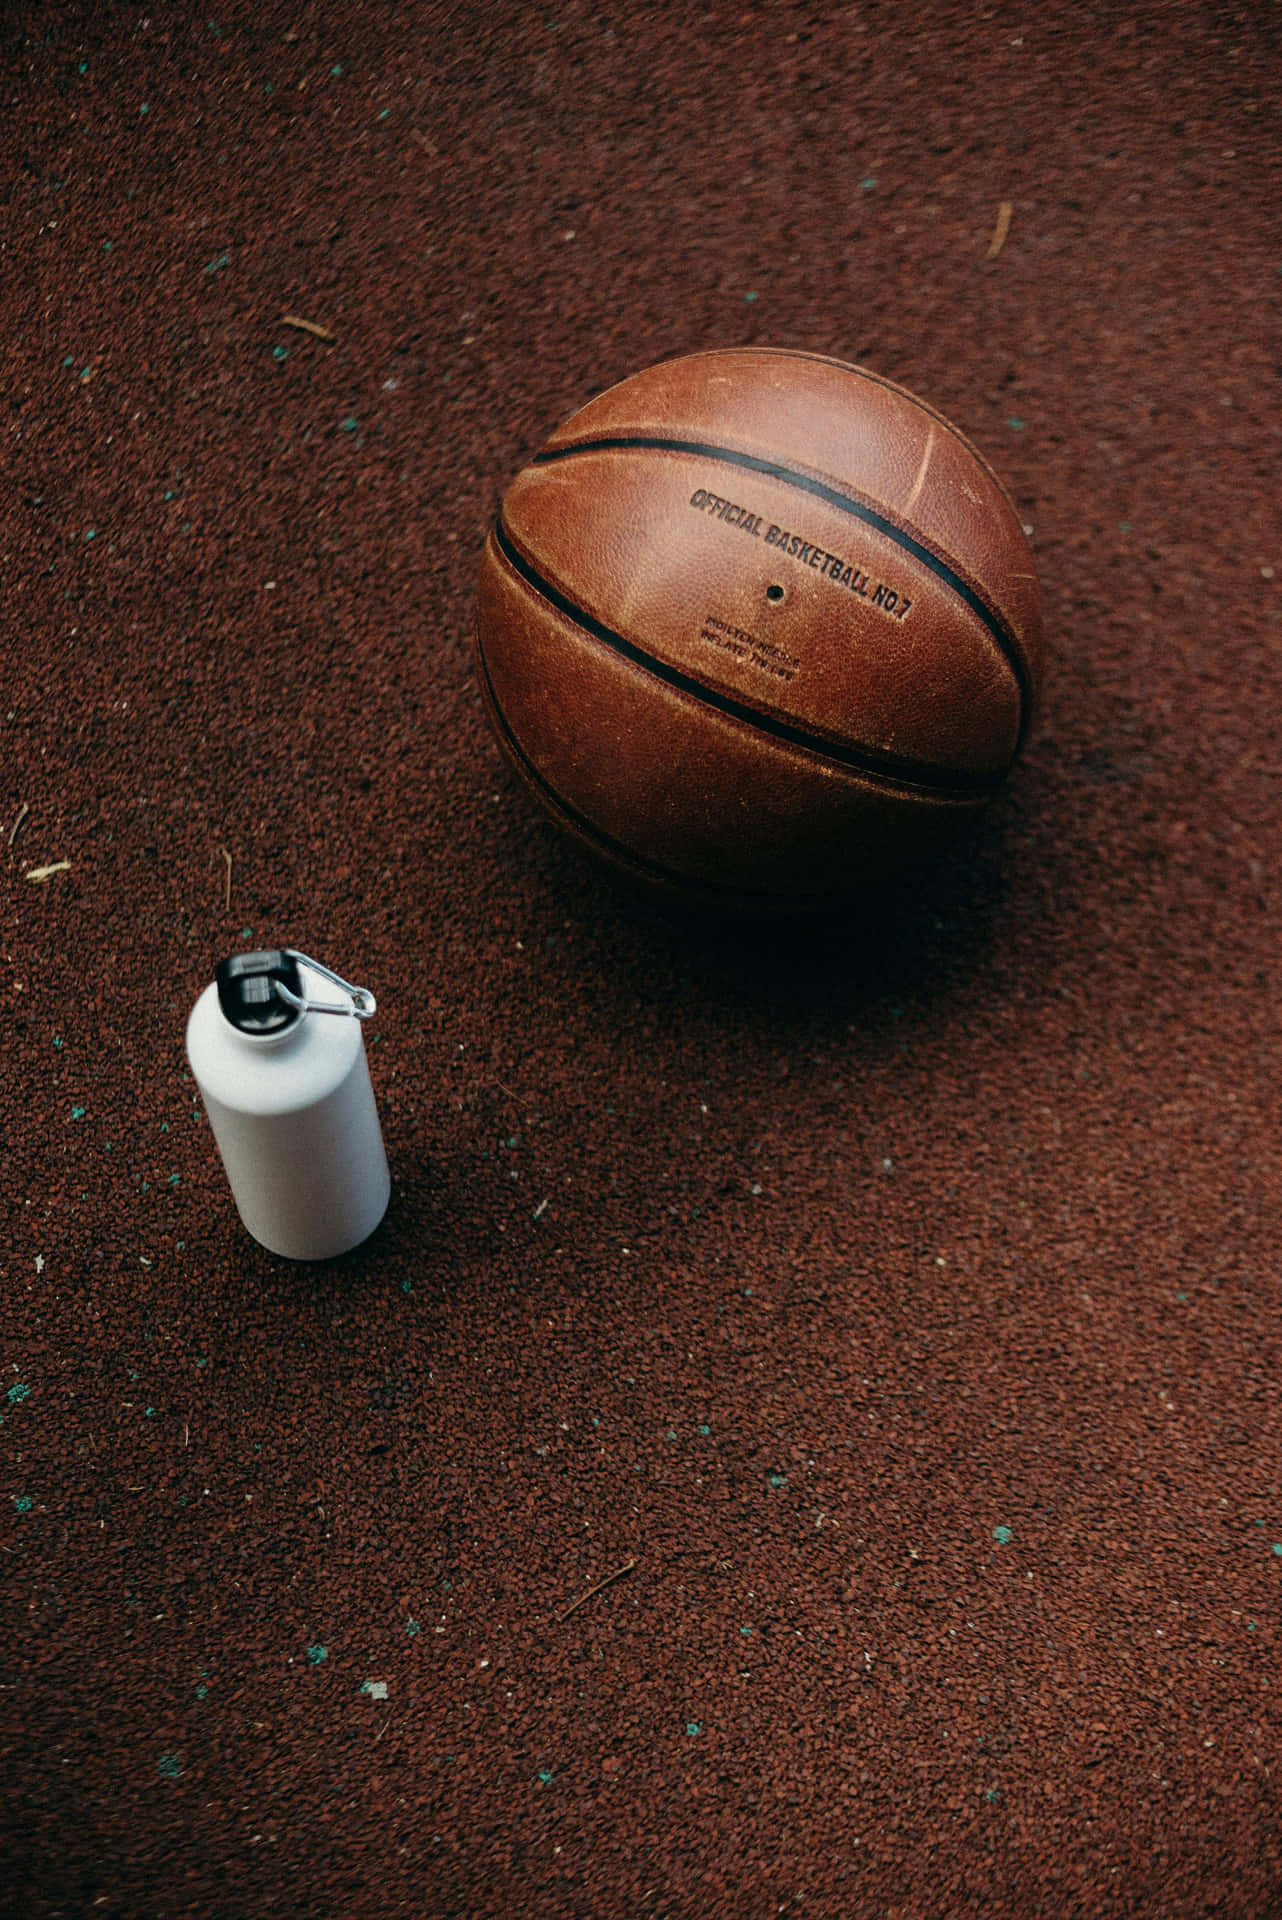 Basketballand Water Bottleon Court.jpg Wallpaper